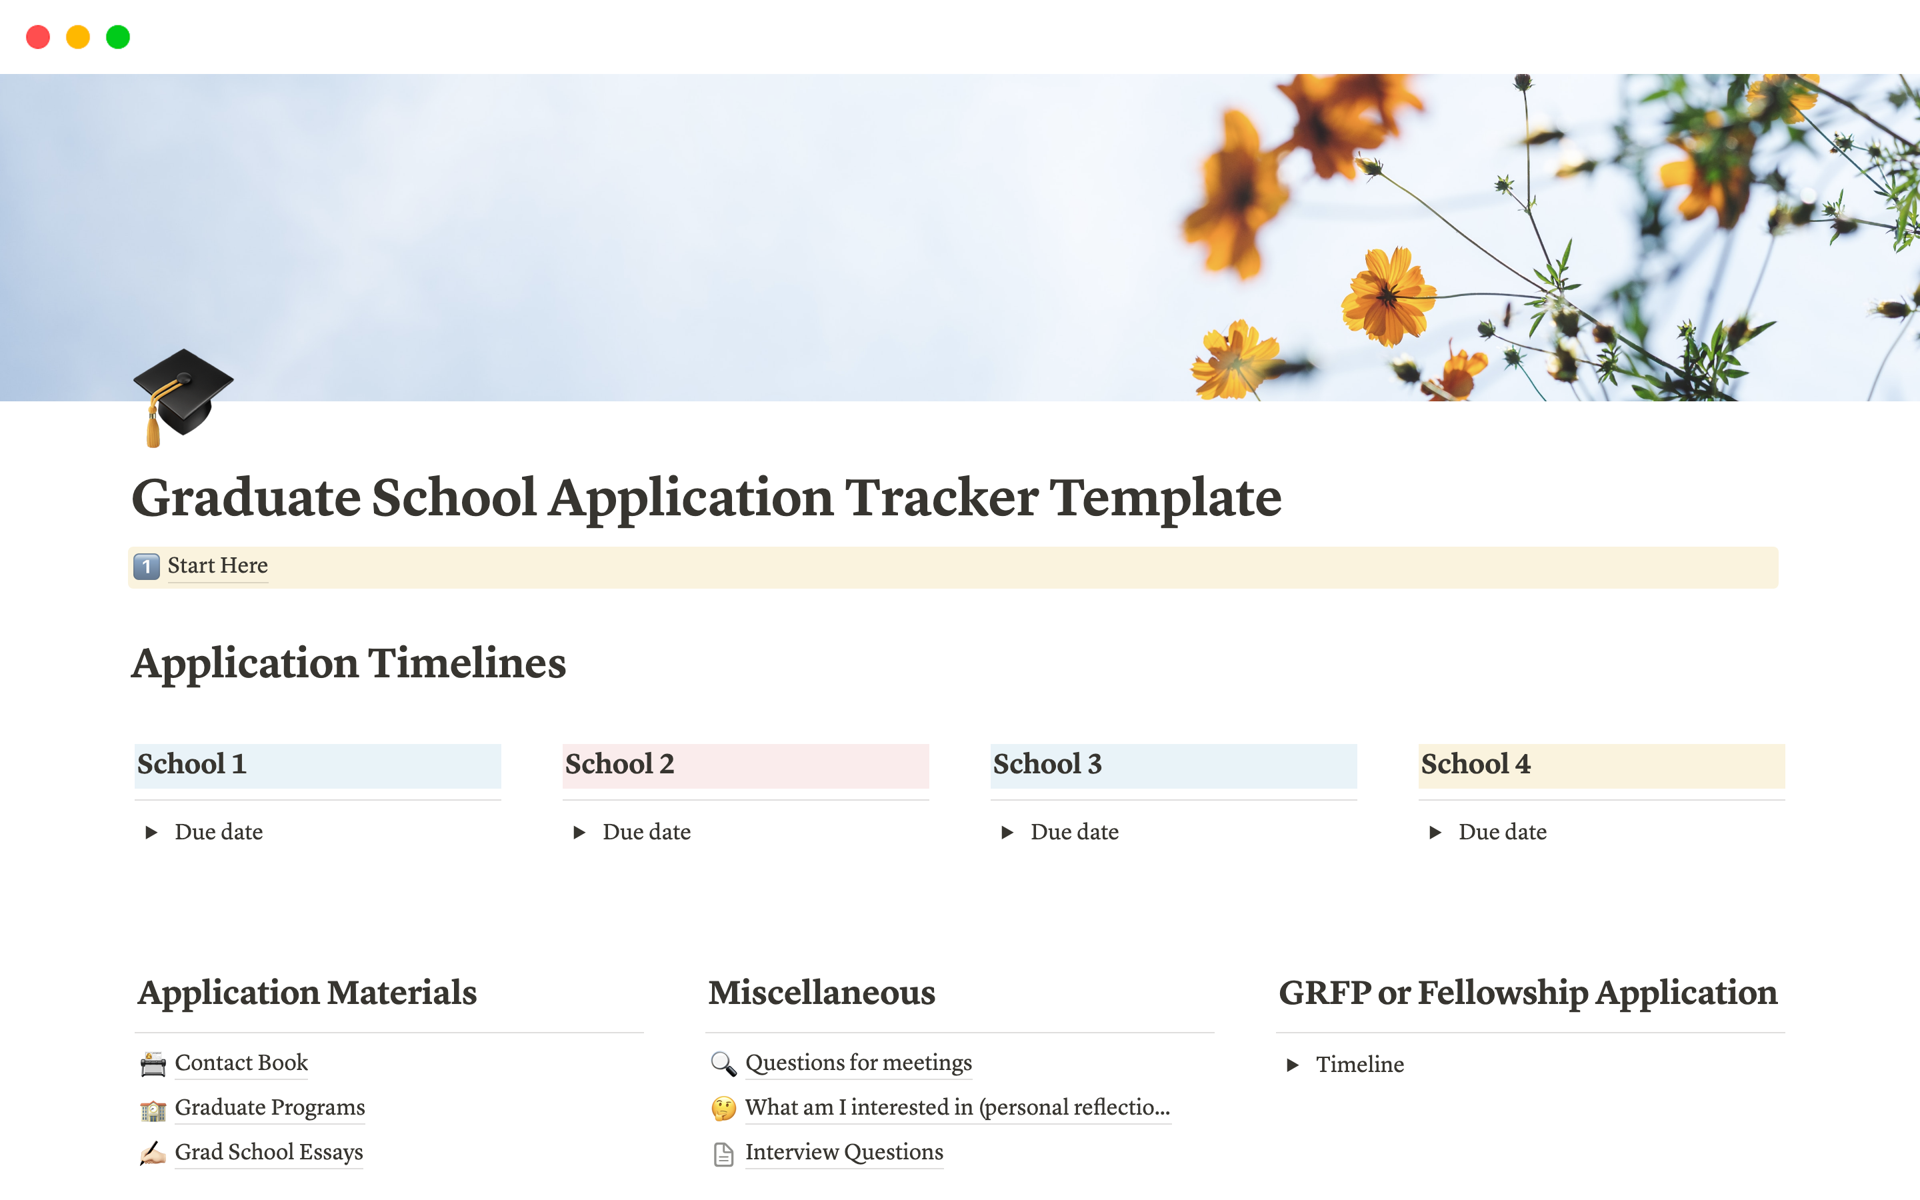 En förhandsgranskning av mallen för Graduate School Application Tracker